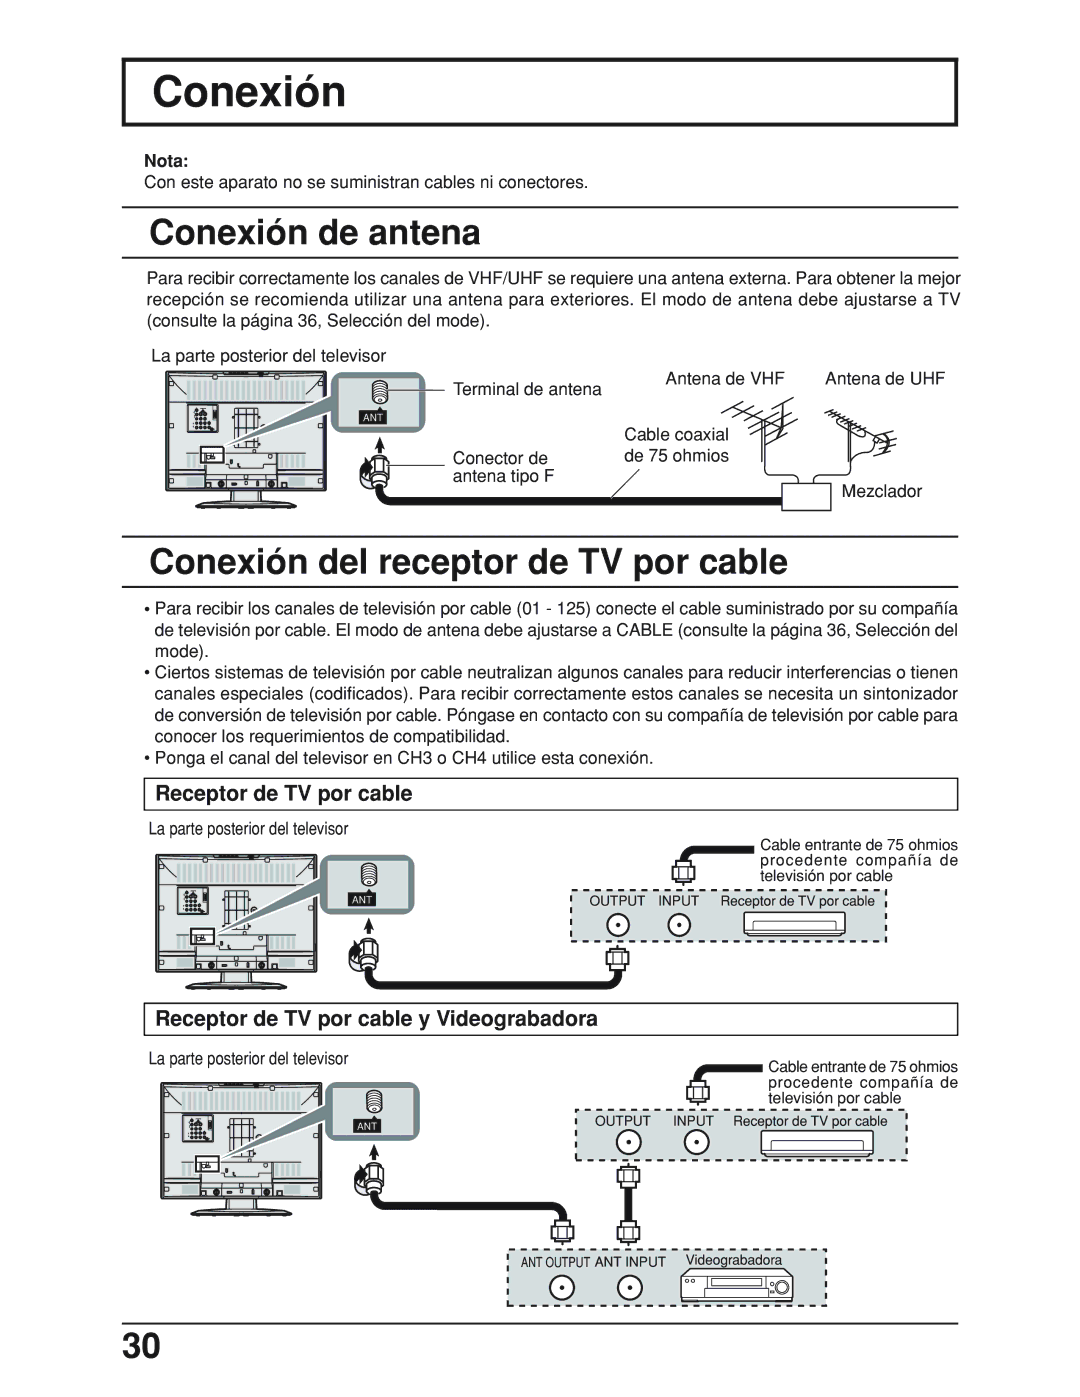 Panasonic TC-19LE50, TC 19LX50 Conexión de antena, Conexión del receptor de TV por cable, Receptor de TV por cable 